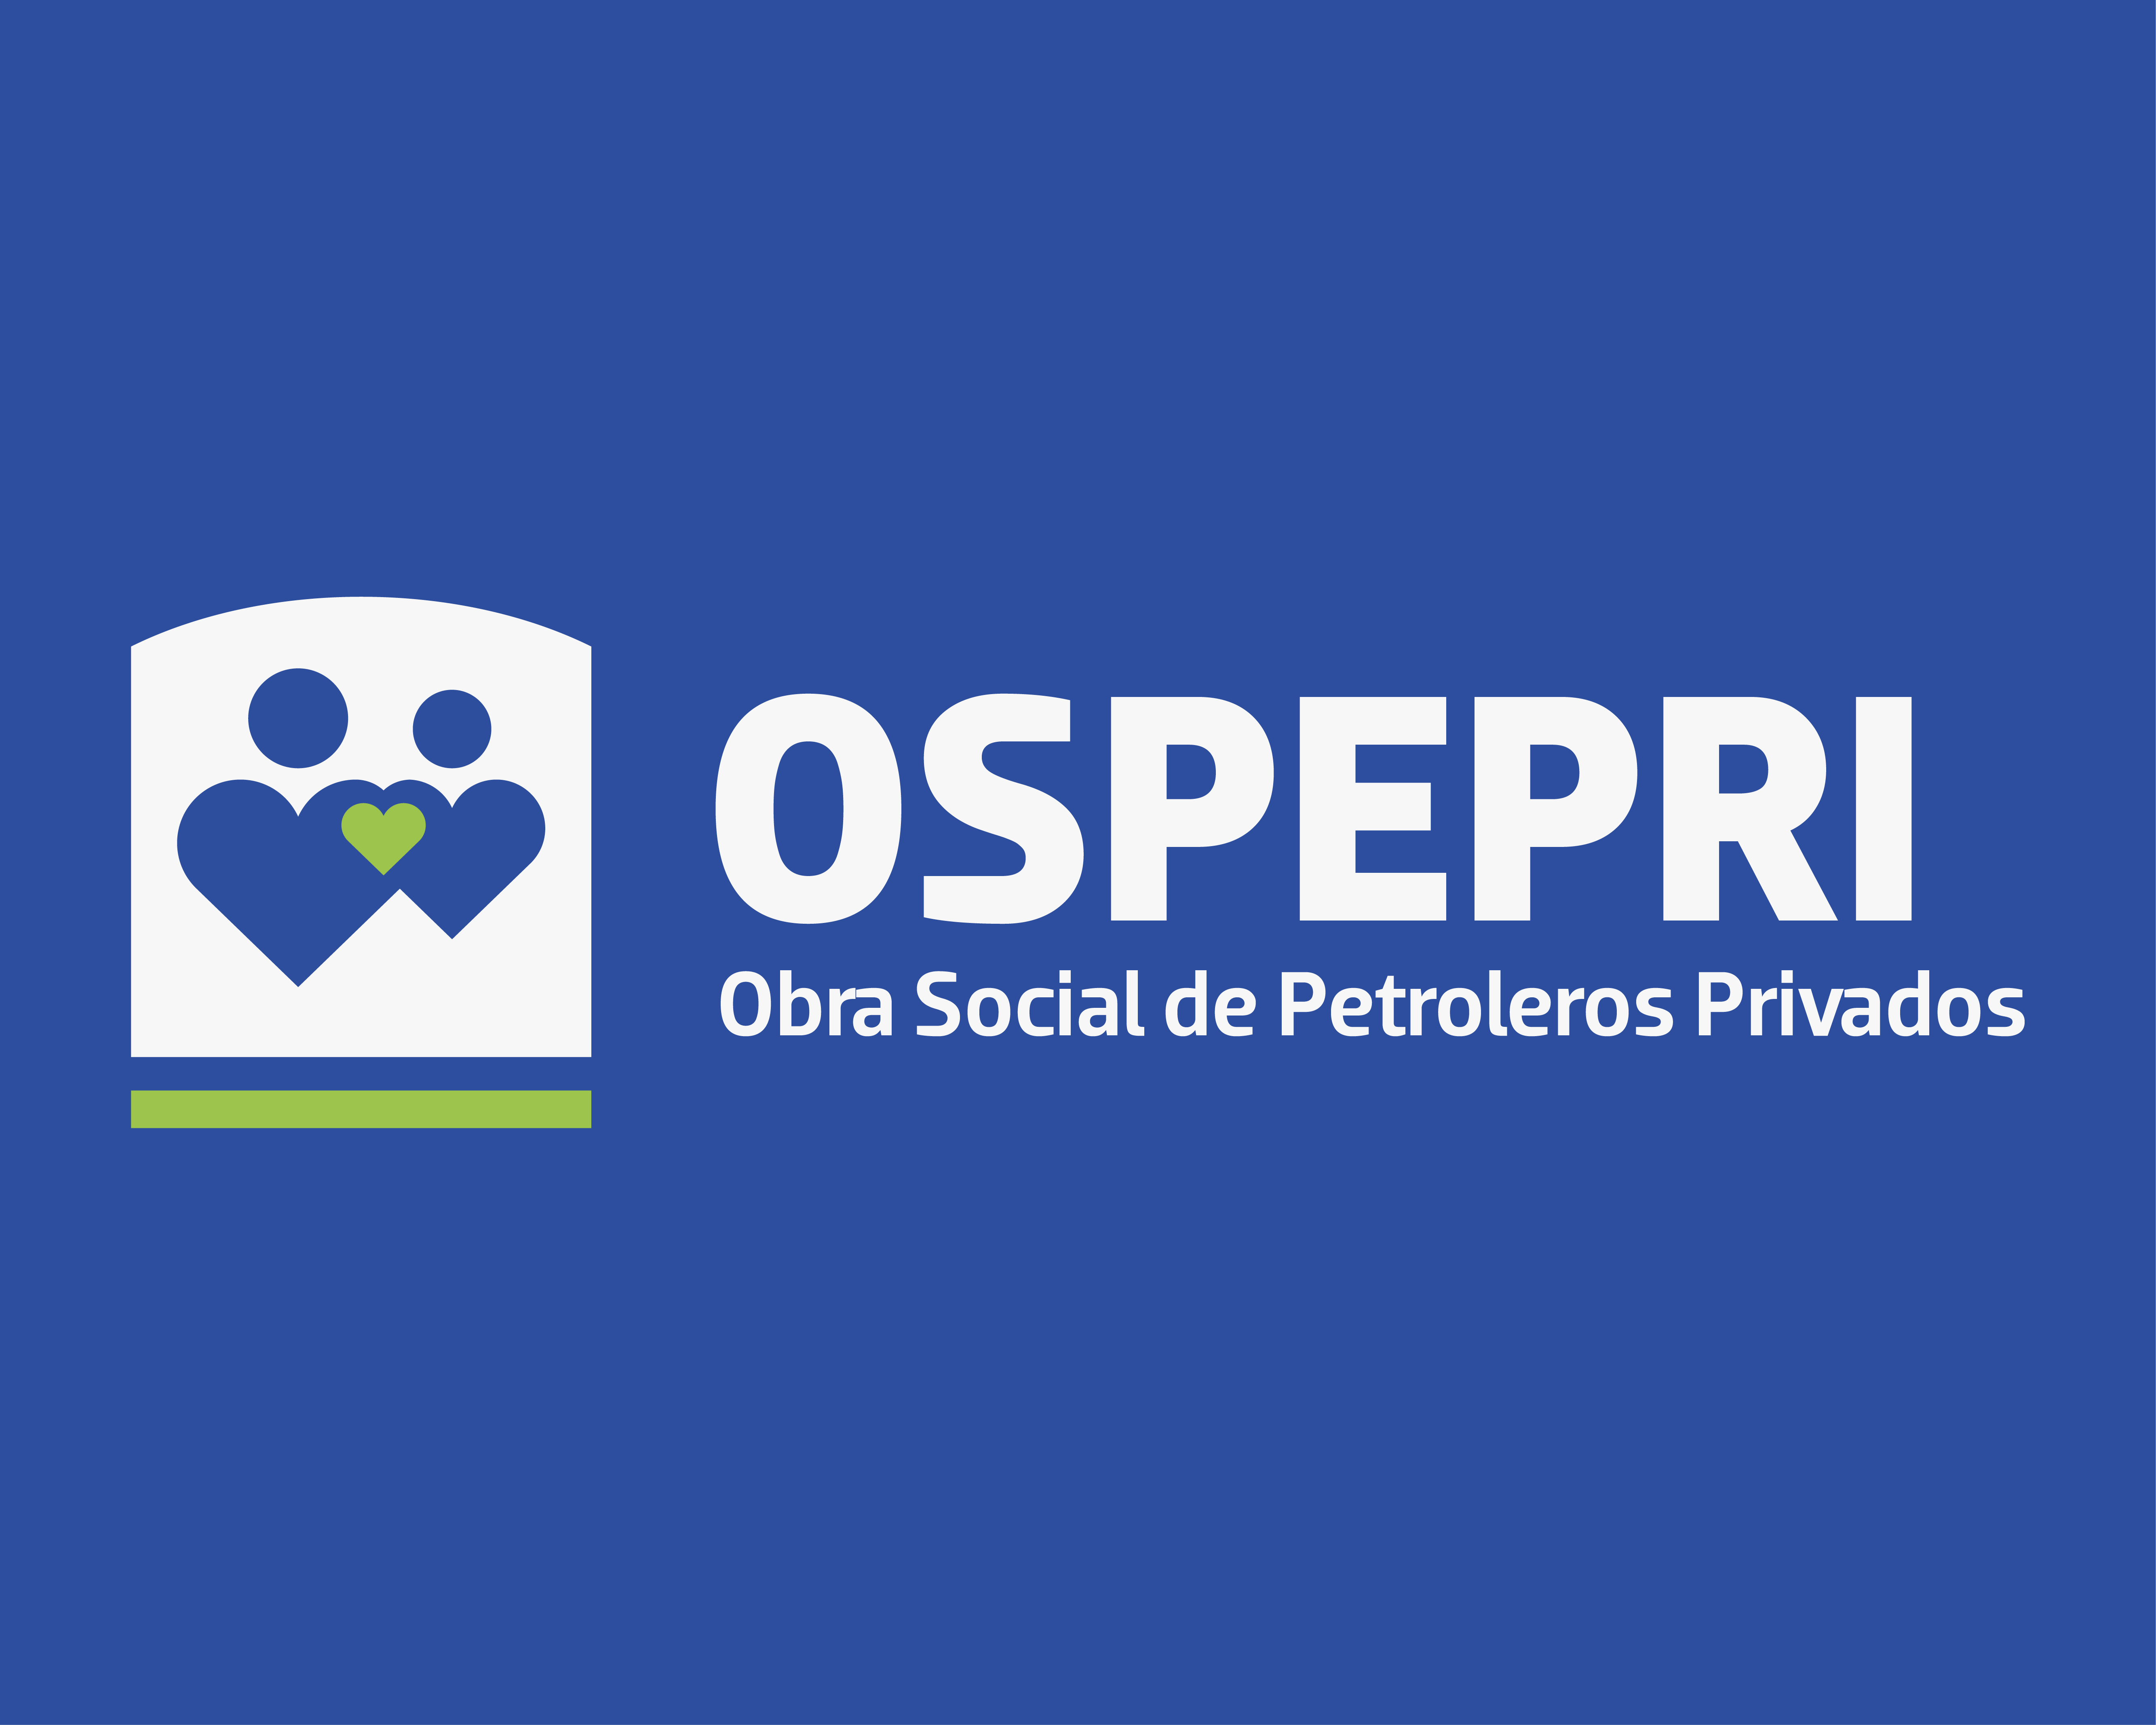 ospepri - Obra Social de Petroleros Privados